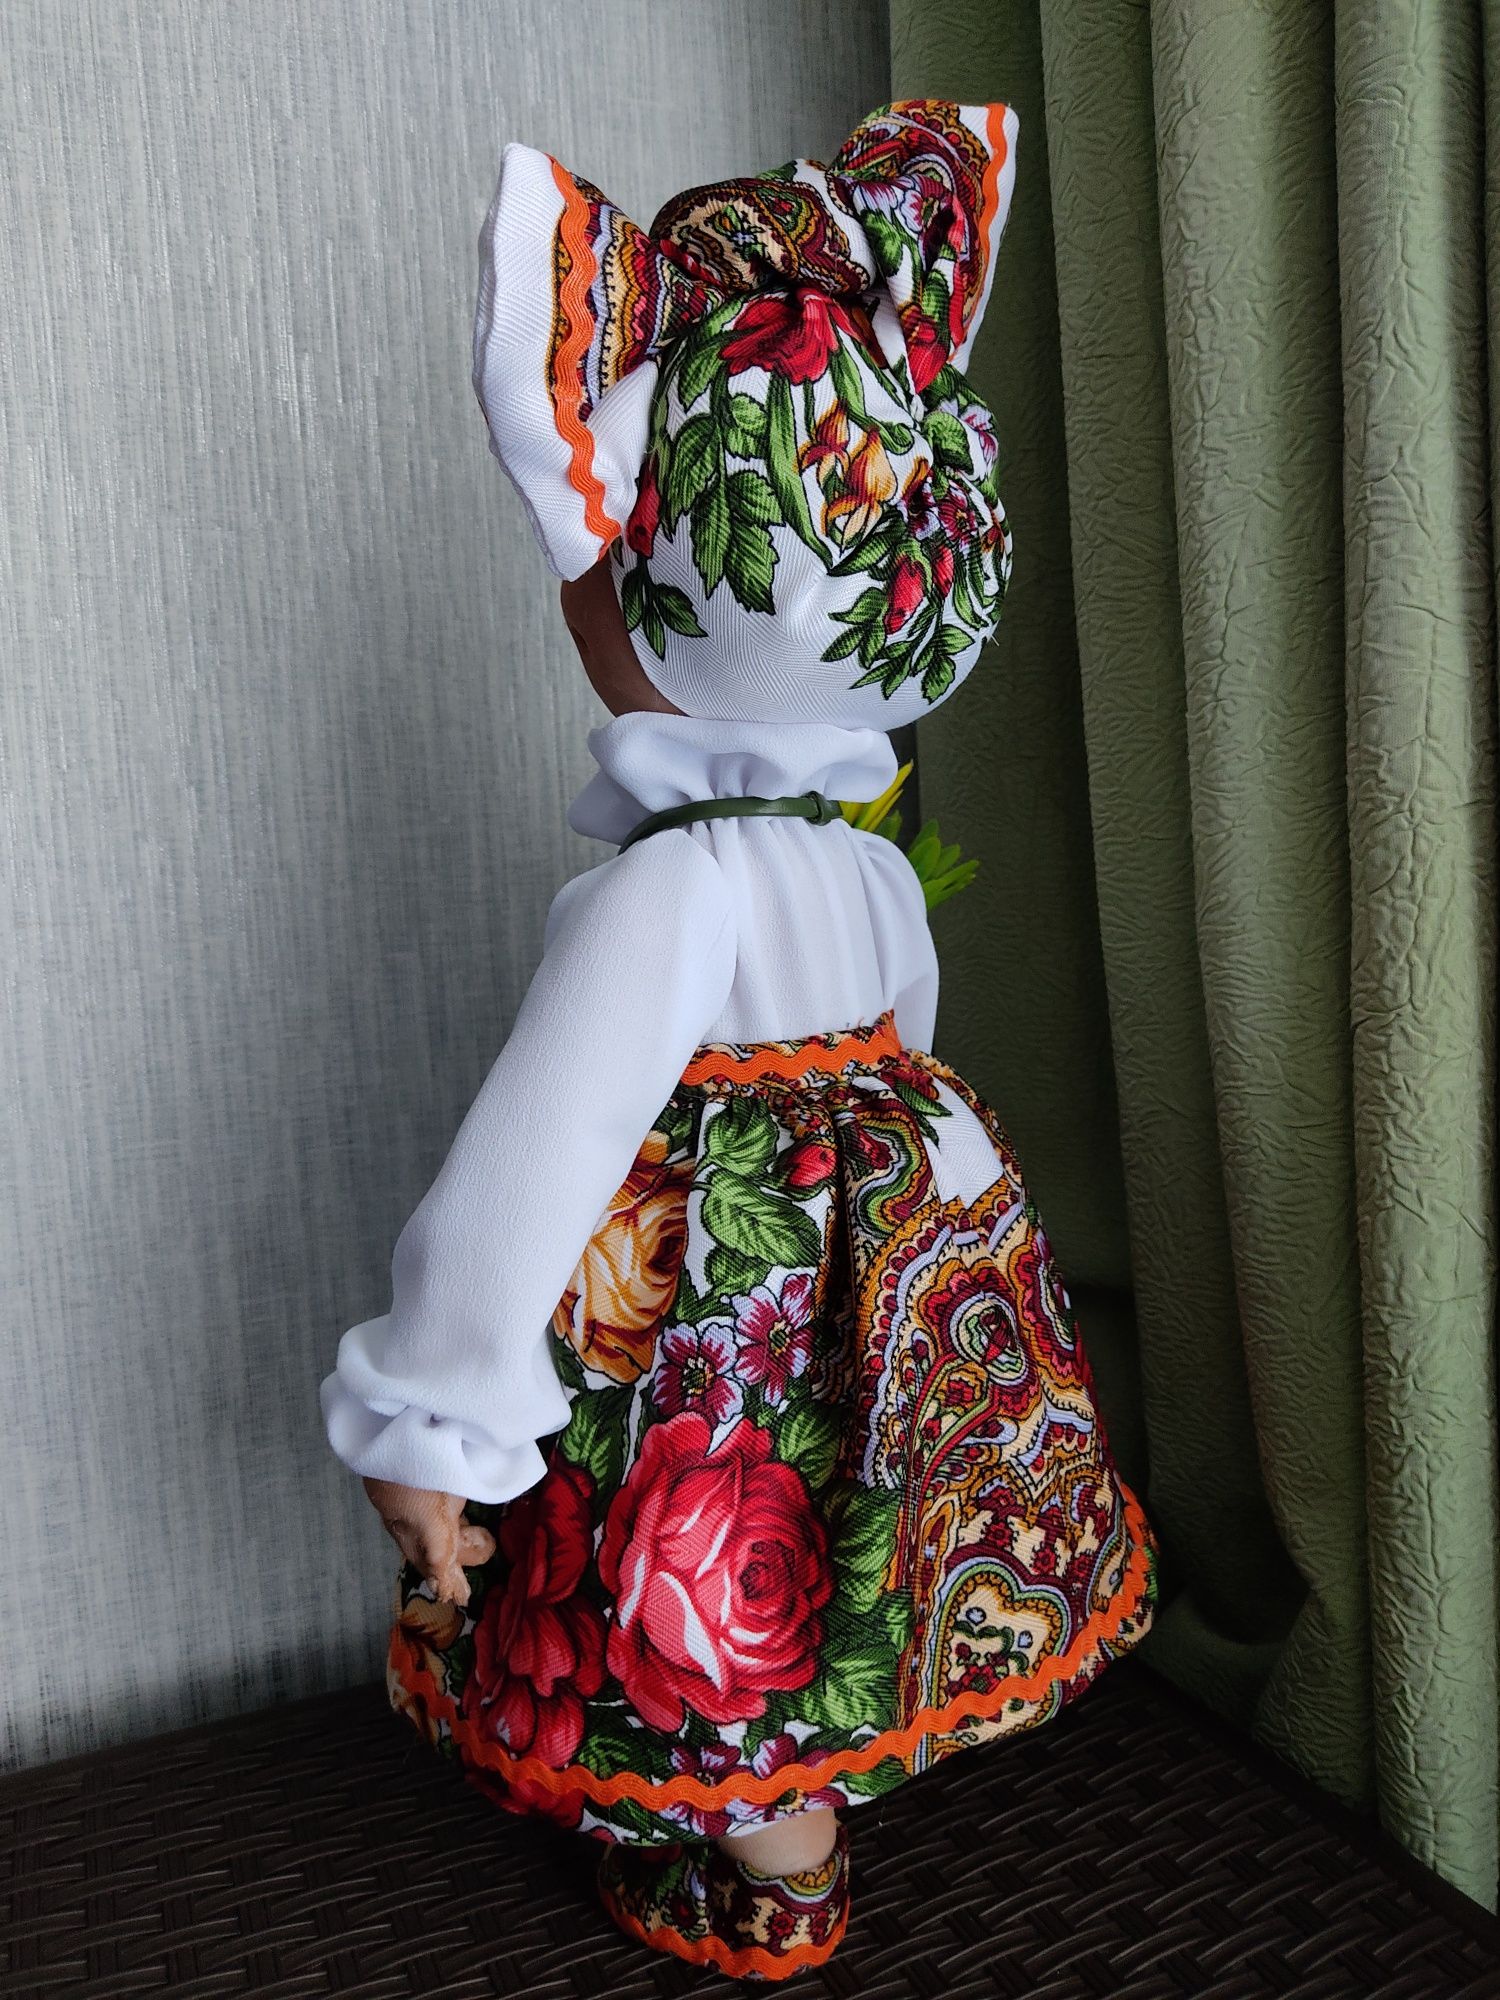 Текстильная кукла. Высота 45 см. Всё сшито и сделано вручную.